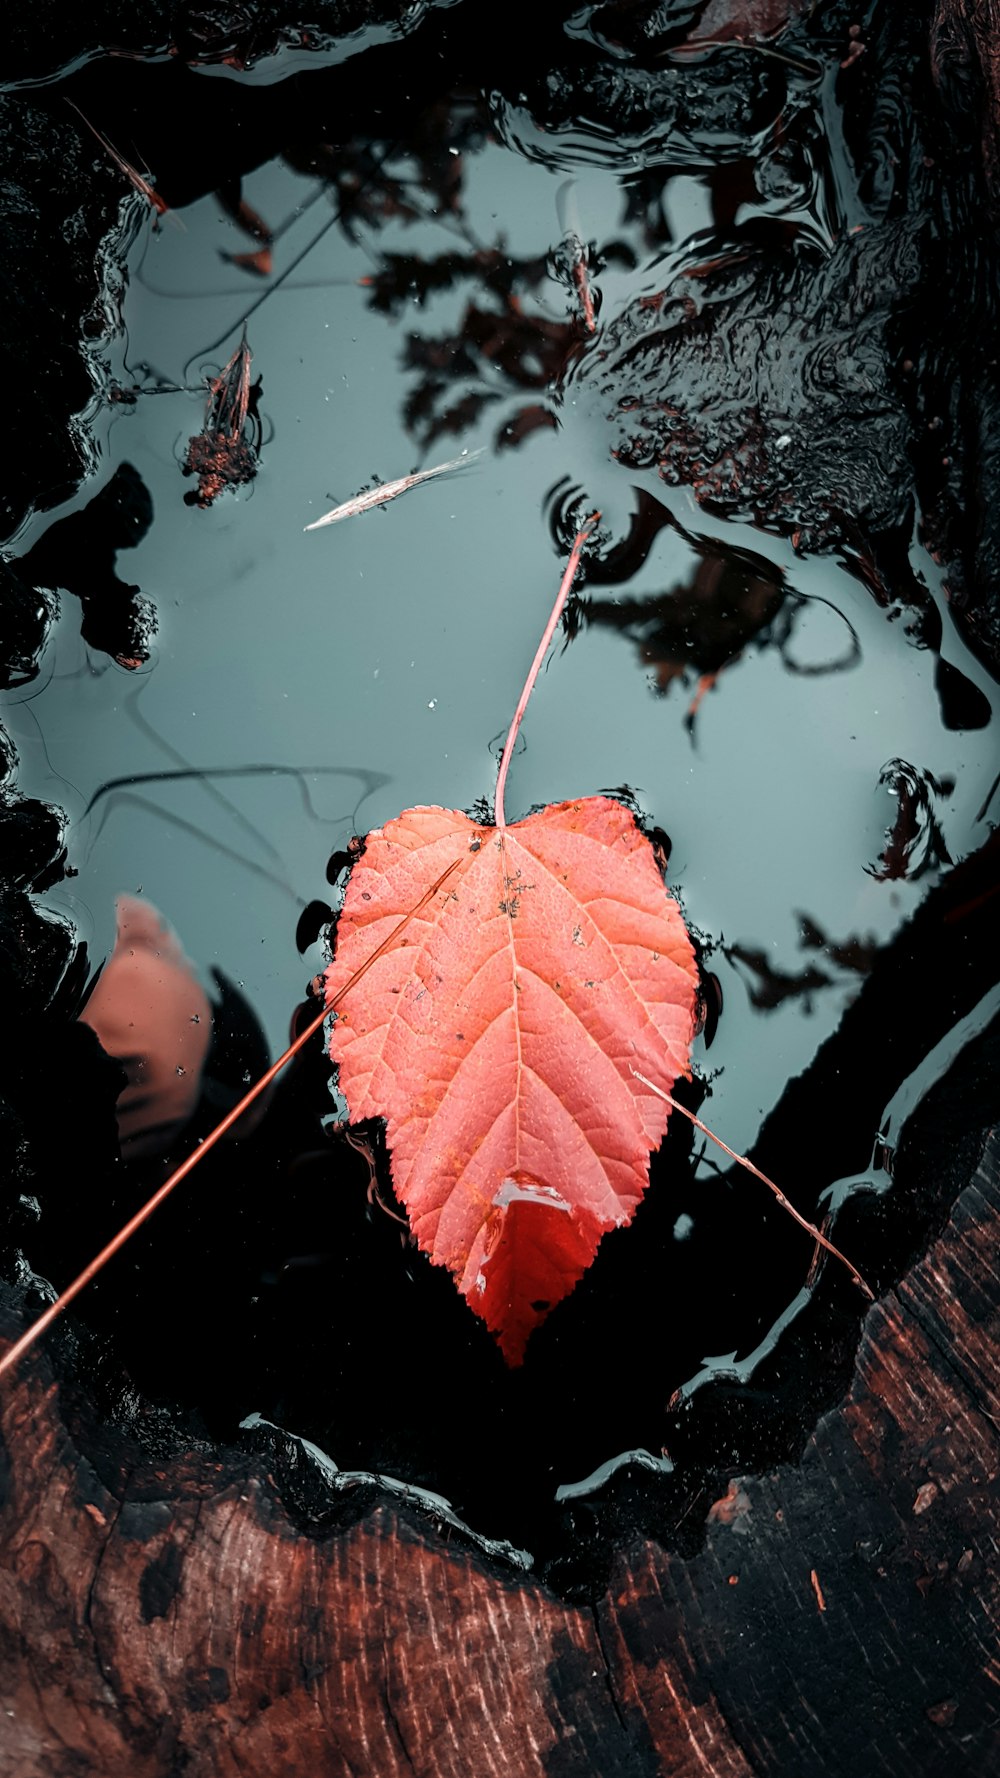 reddish leaf on water